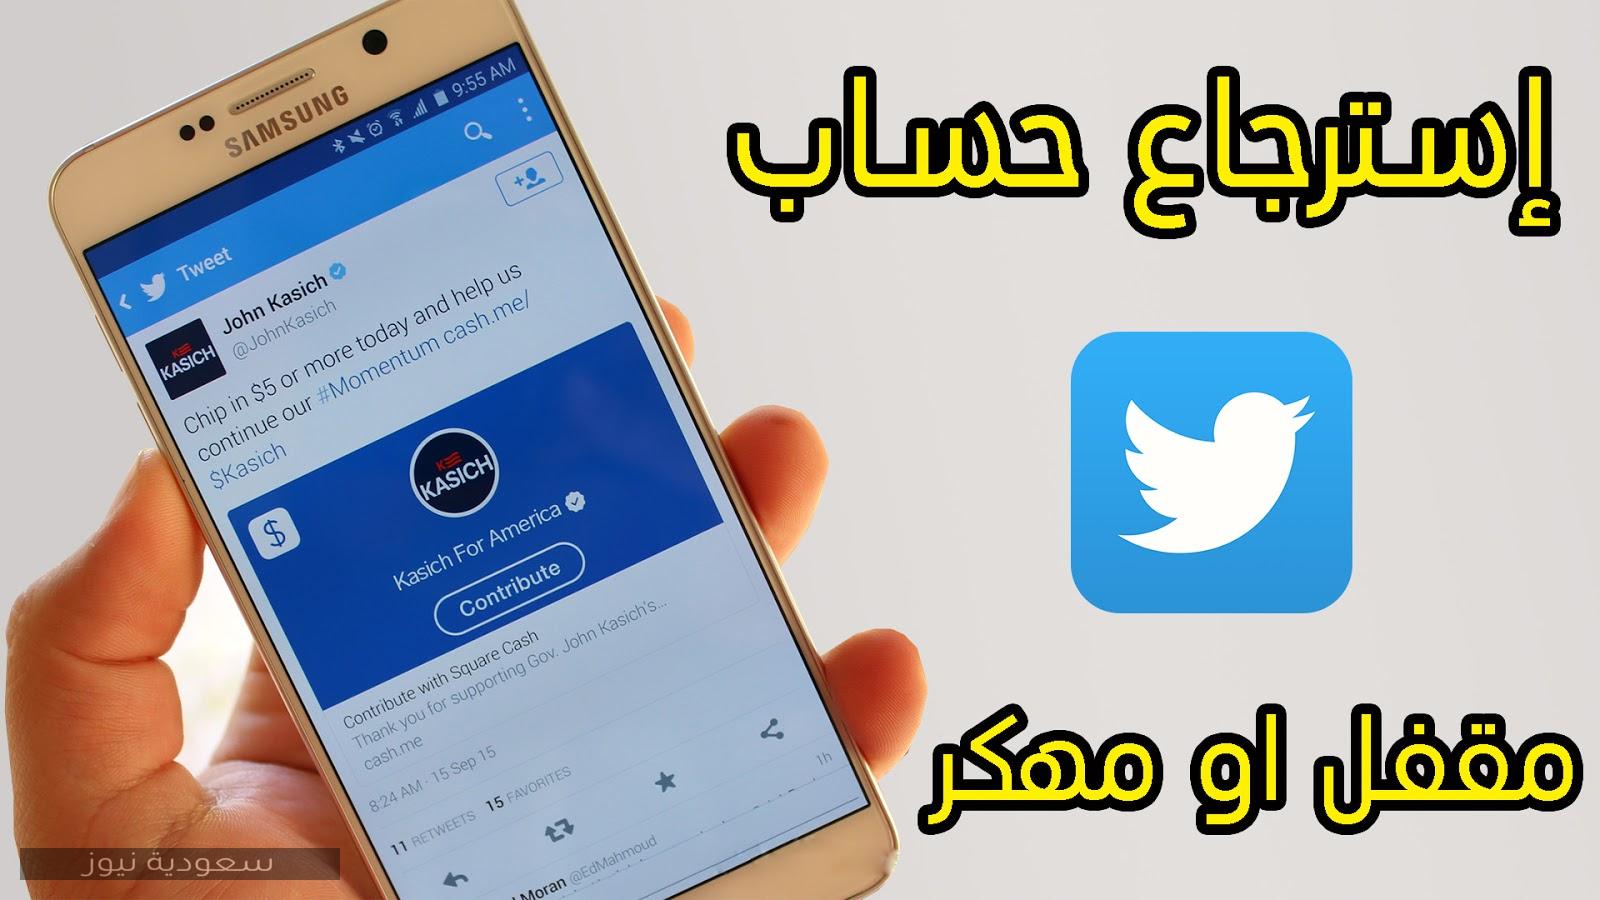 خطوات استرجاع حساب تويتر المعطل 2020 سعودية نيوز